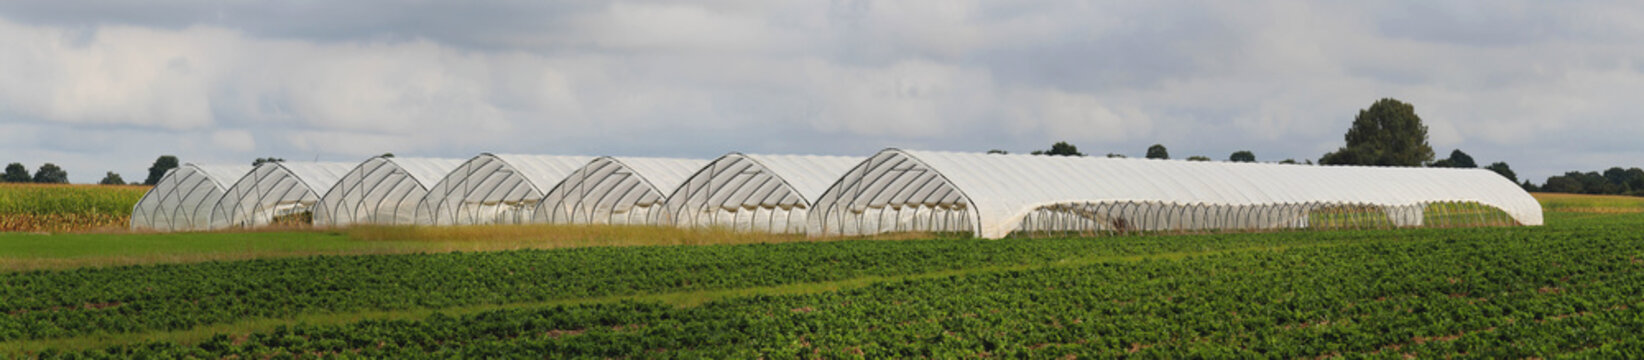 Panorama Foliengewächshaus für Obst- und Gemüseanbau